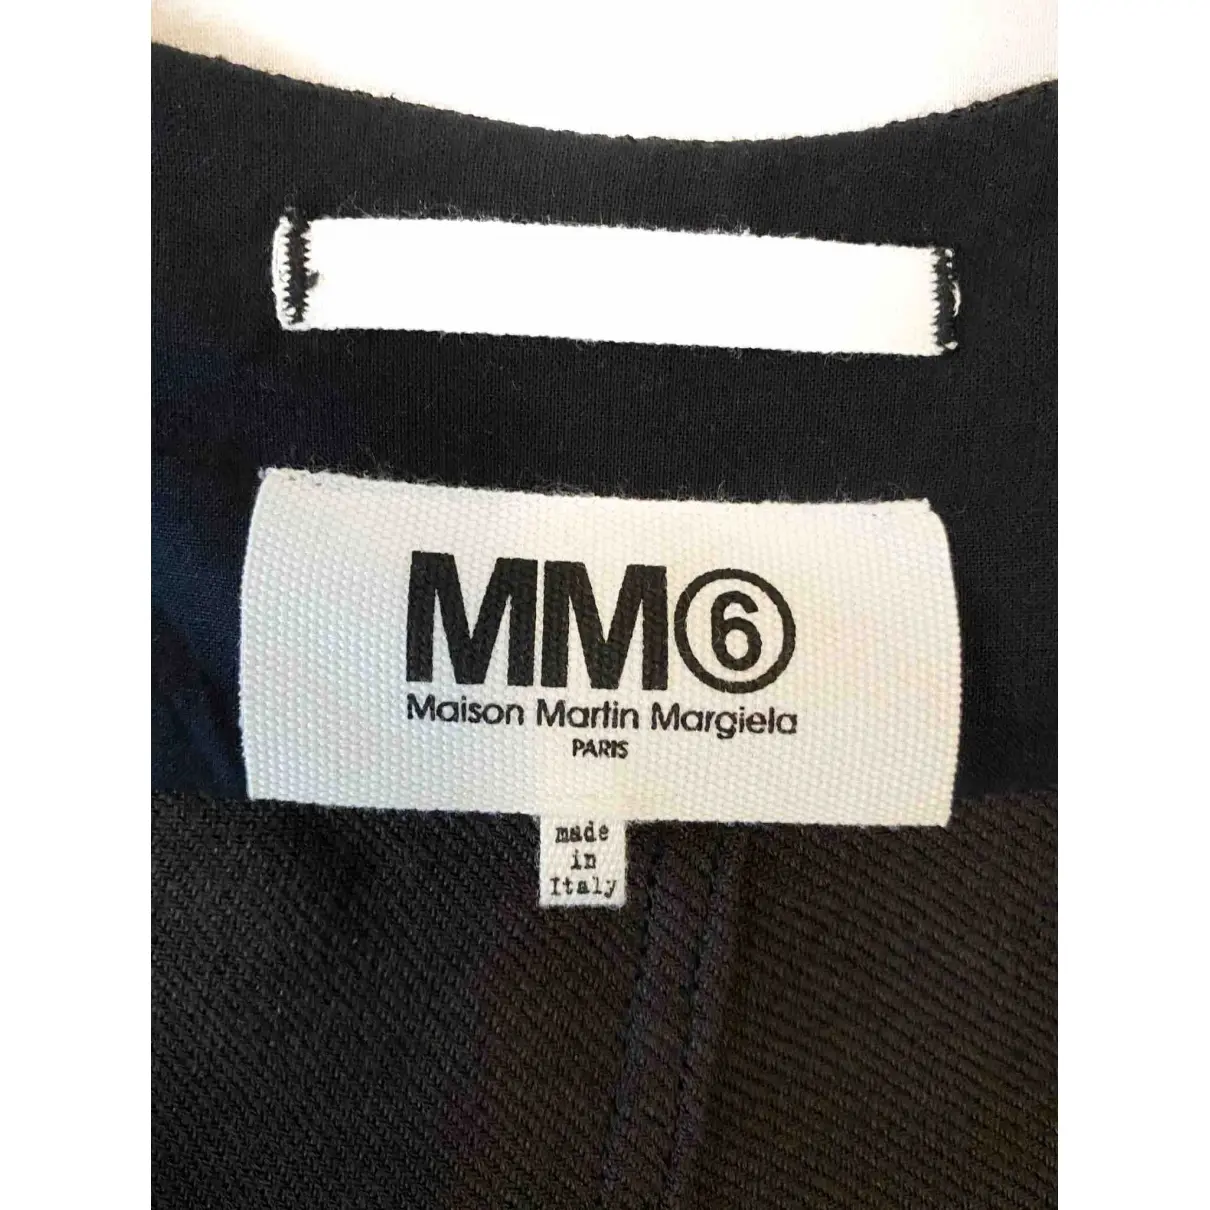 Buy MM6 Linen jacket online